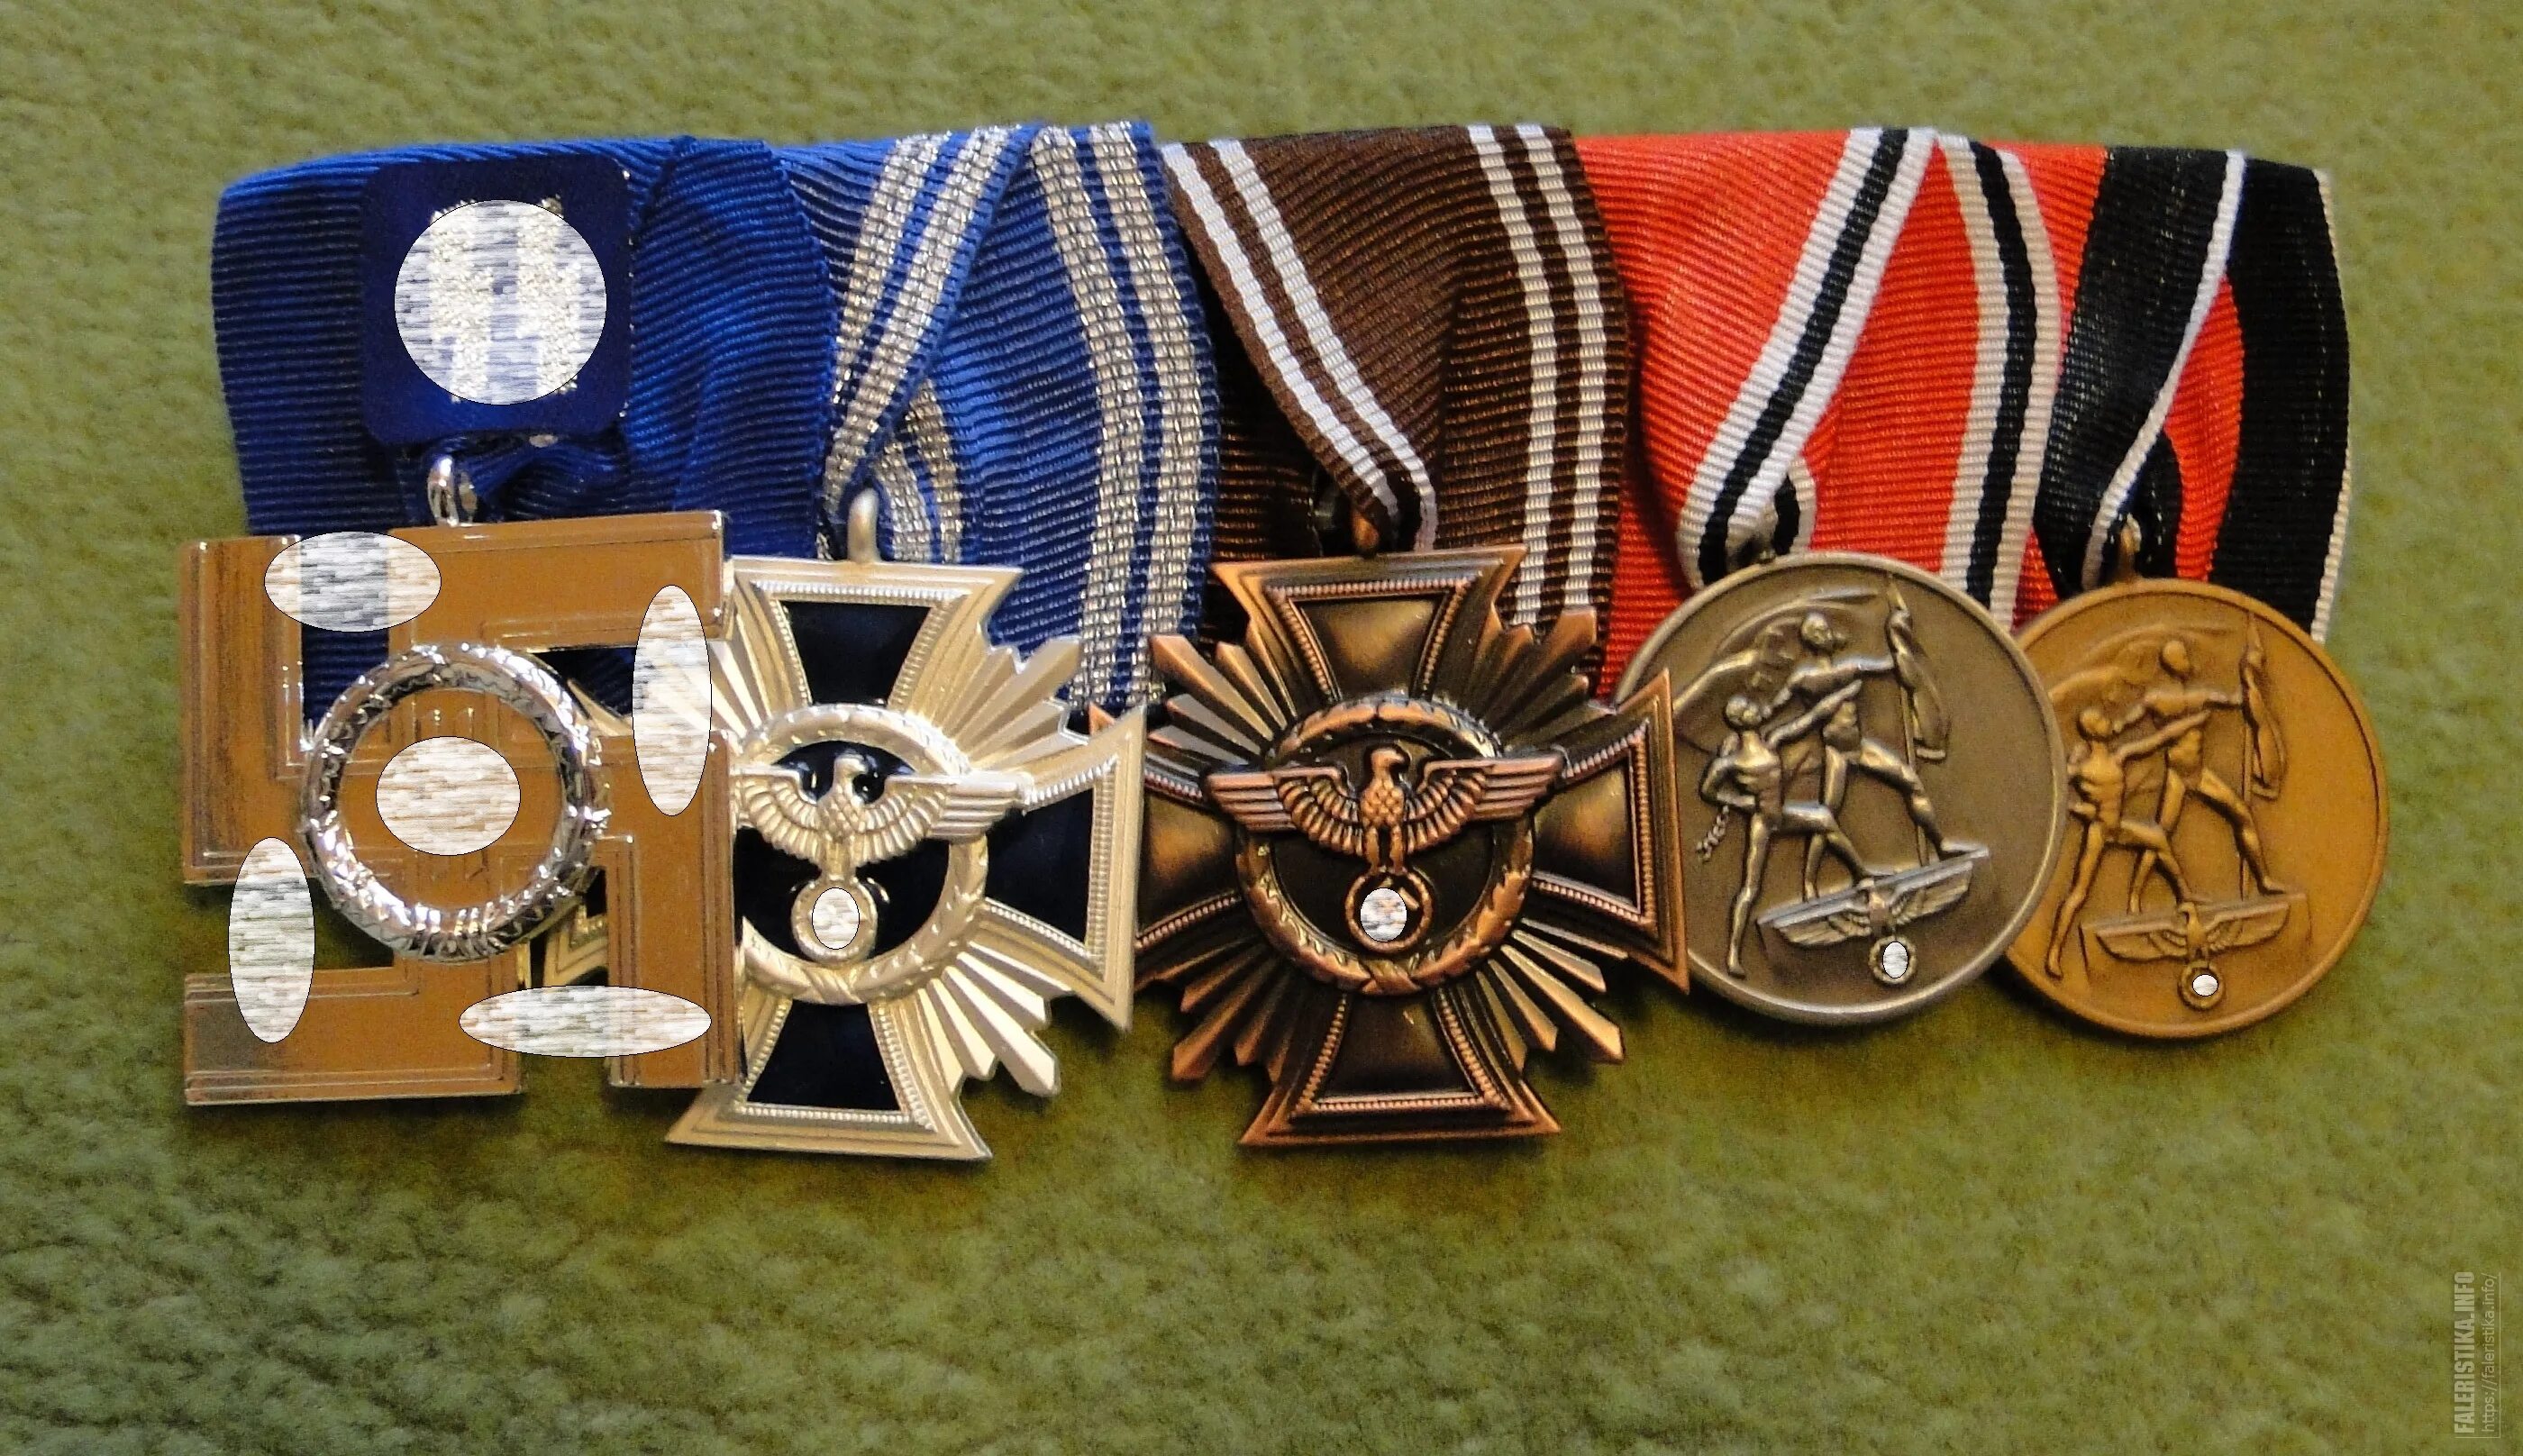 Ордена 3 рейха. Медали СС третьего рейха. Ордена и медали Германии и третьего рейха. Немецкая наградная колодка 3 Рейх.